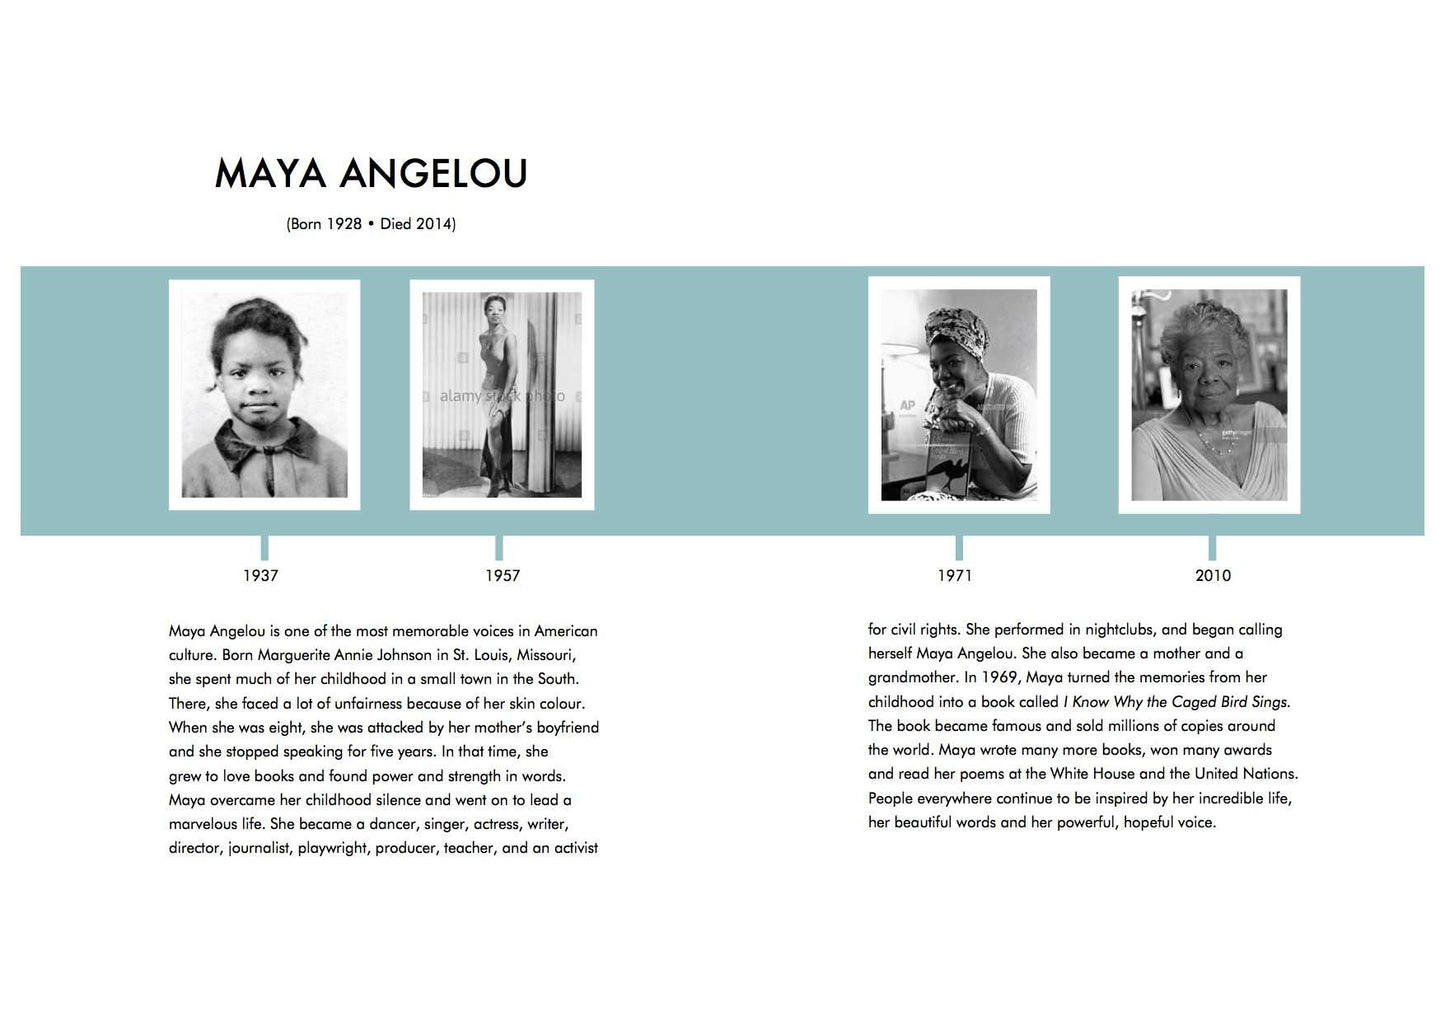 Little People Big Dreams: Maya Angelou